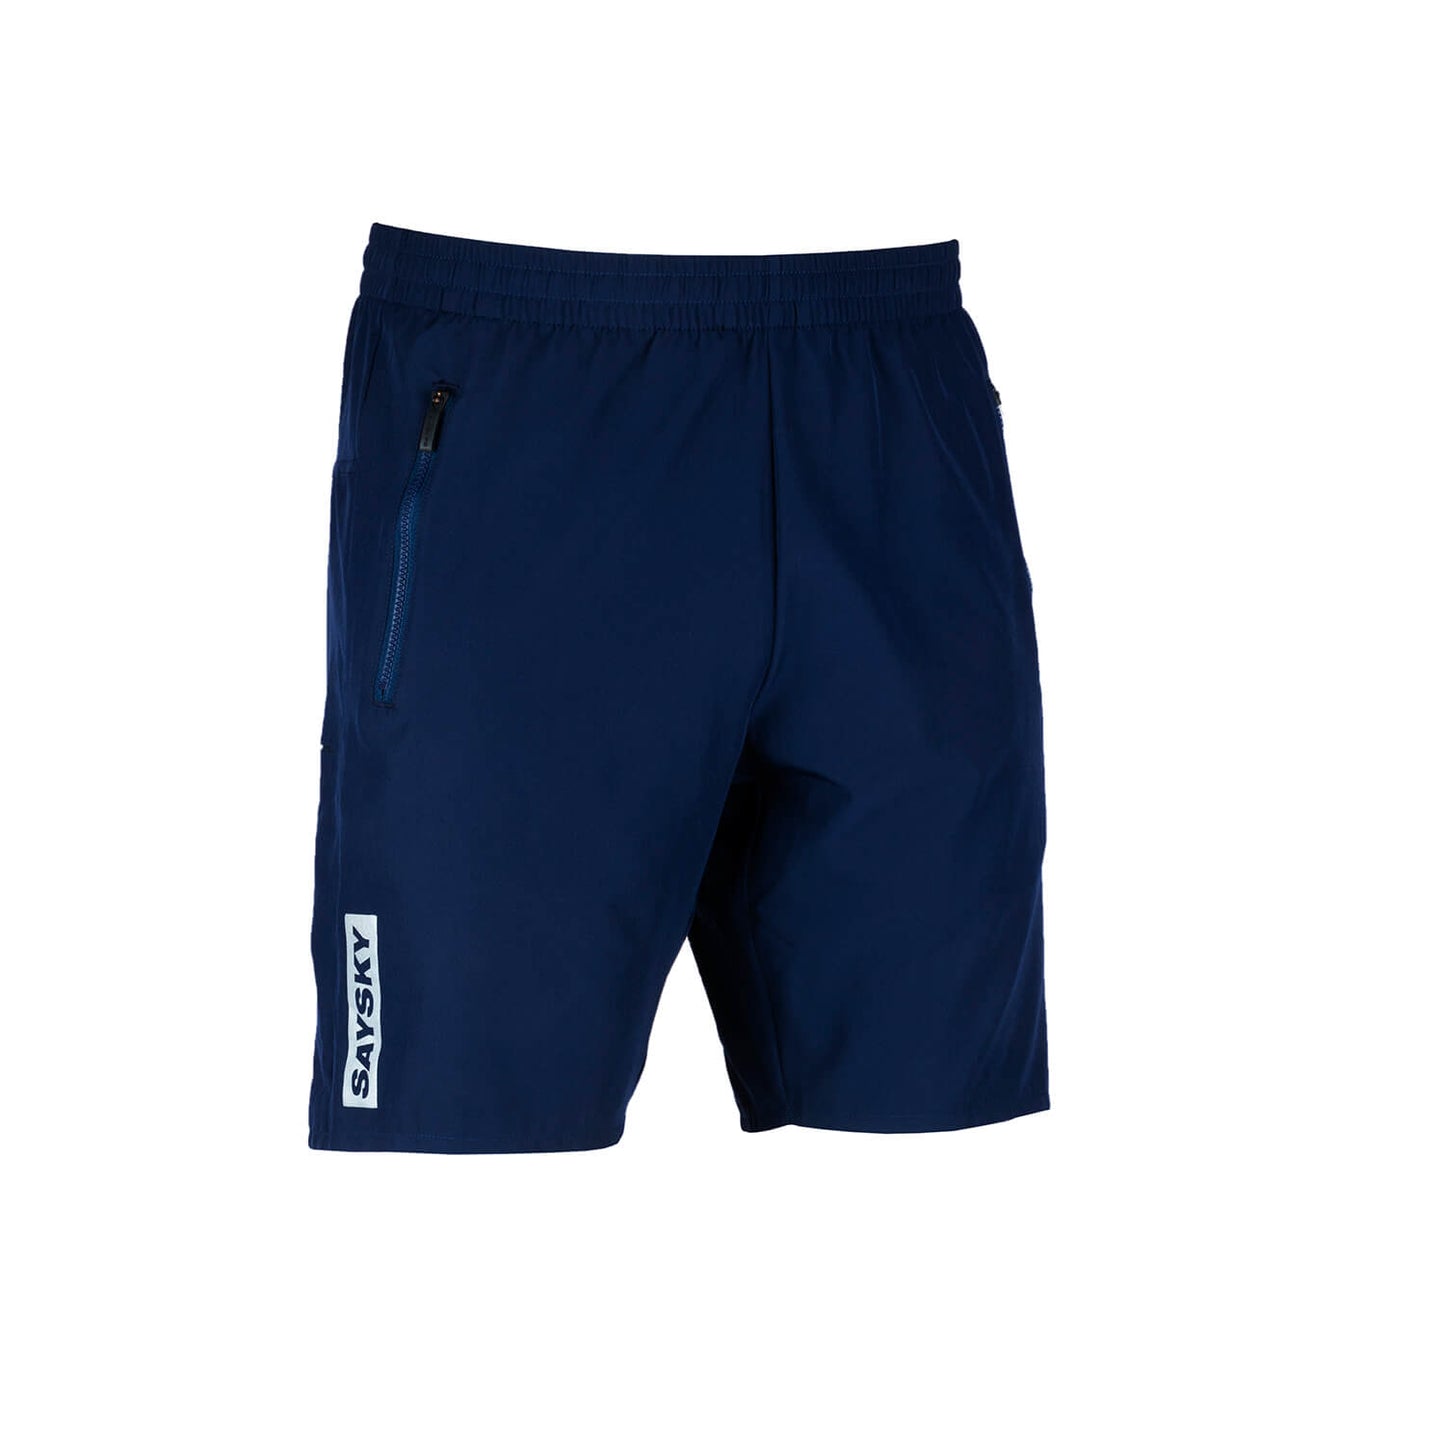 レンジャーショーツ FMRSH16 Ranger Shorts - Maritime Blue [ユニセックス]